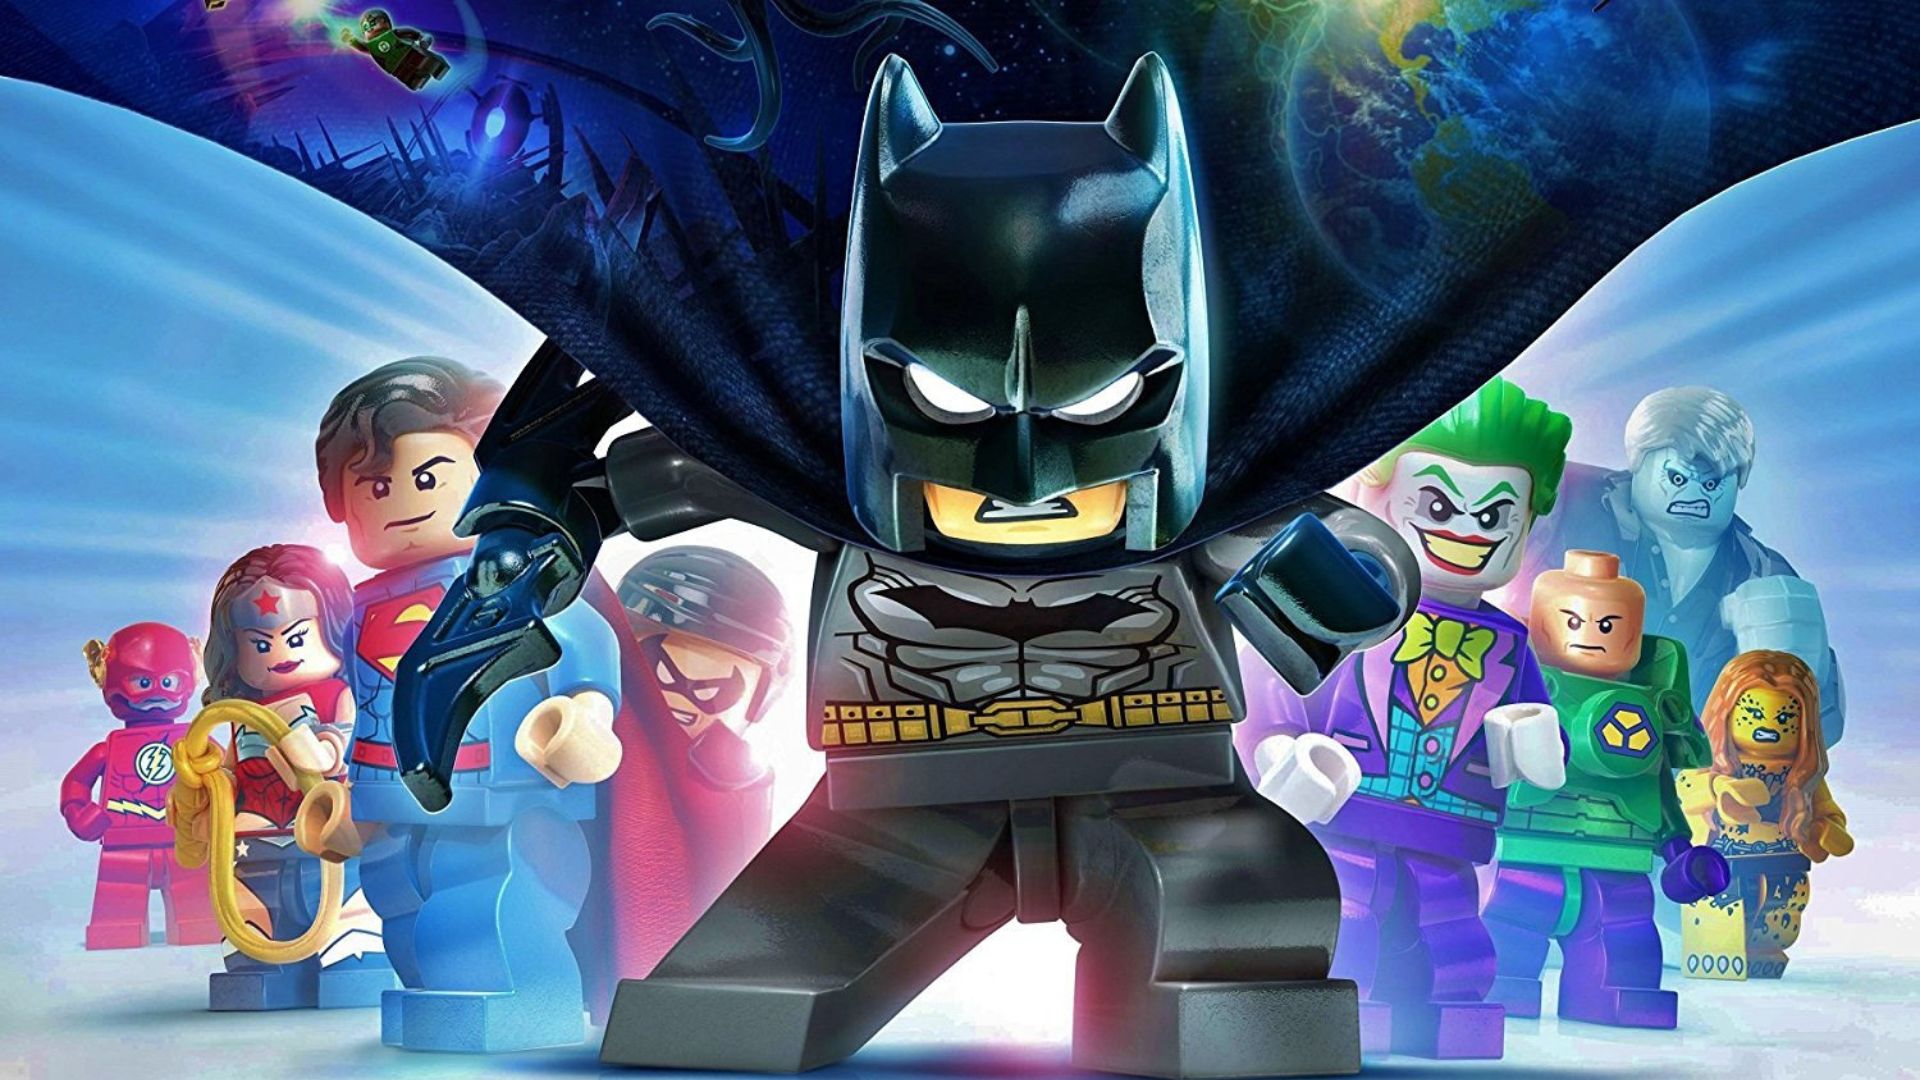 バットマン ゲーム - 味方と敵の三角形の前に立つレゴ バットマン -- スーパーマン、フラッシュ、ワンダーウーマン、ジョーカーなど